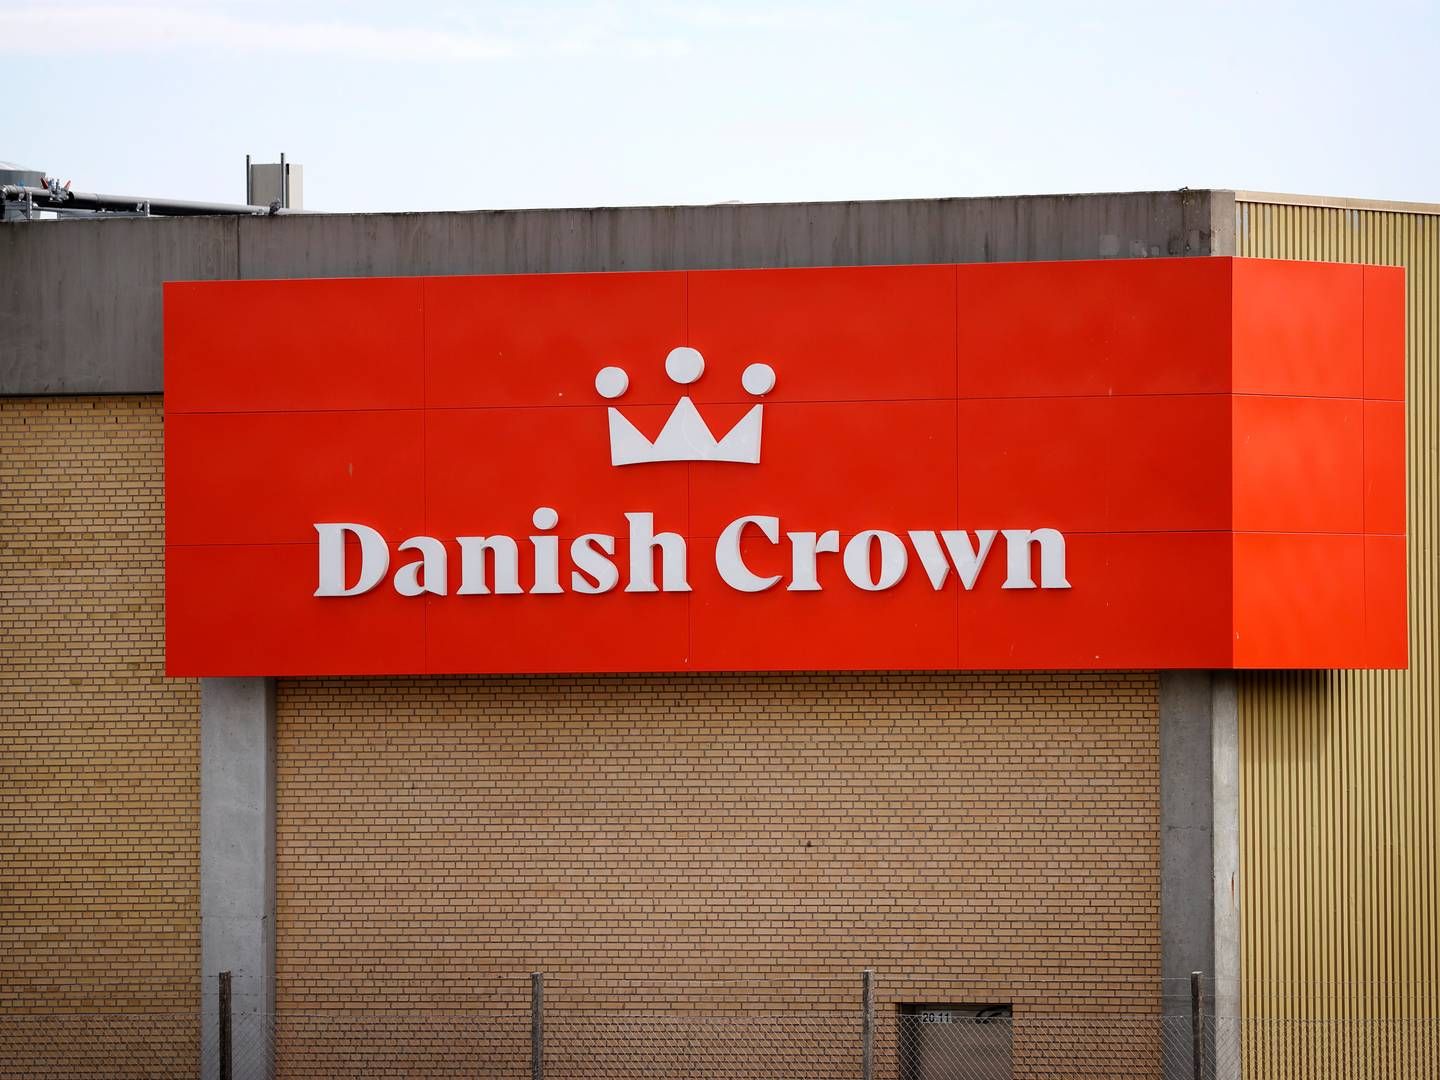 Brancher, som Danish Crown er en del af, er automatisk udsat for mere kritisk bevågenhed og dermed i større risiko for at blive anklaget for greenwashing, forklarer selvstændig PR- og kommunikationsrådgiver Pernille Winge. | Foto: Jens Dresling/Ritzau Scanpix